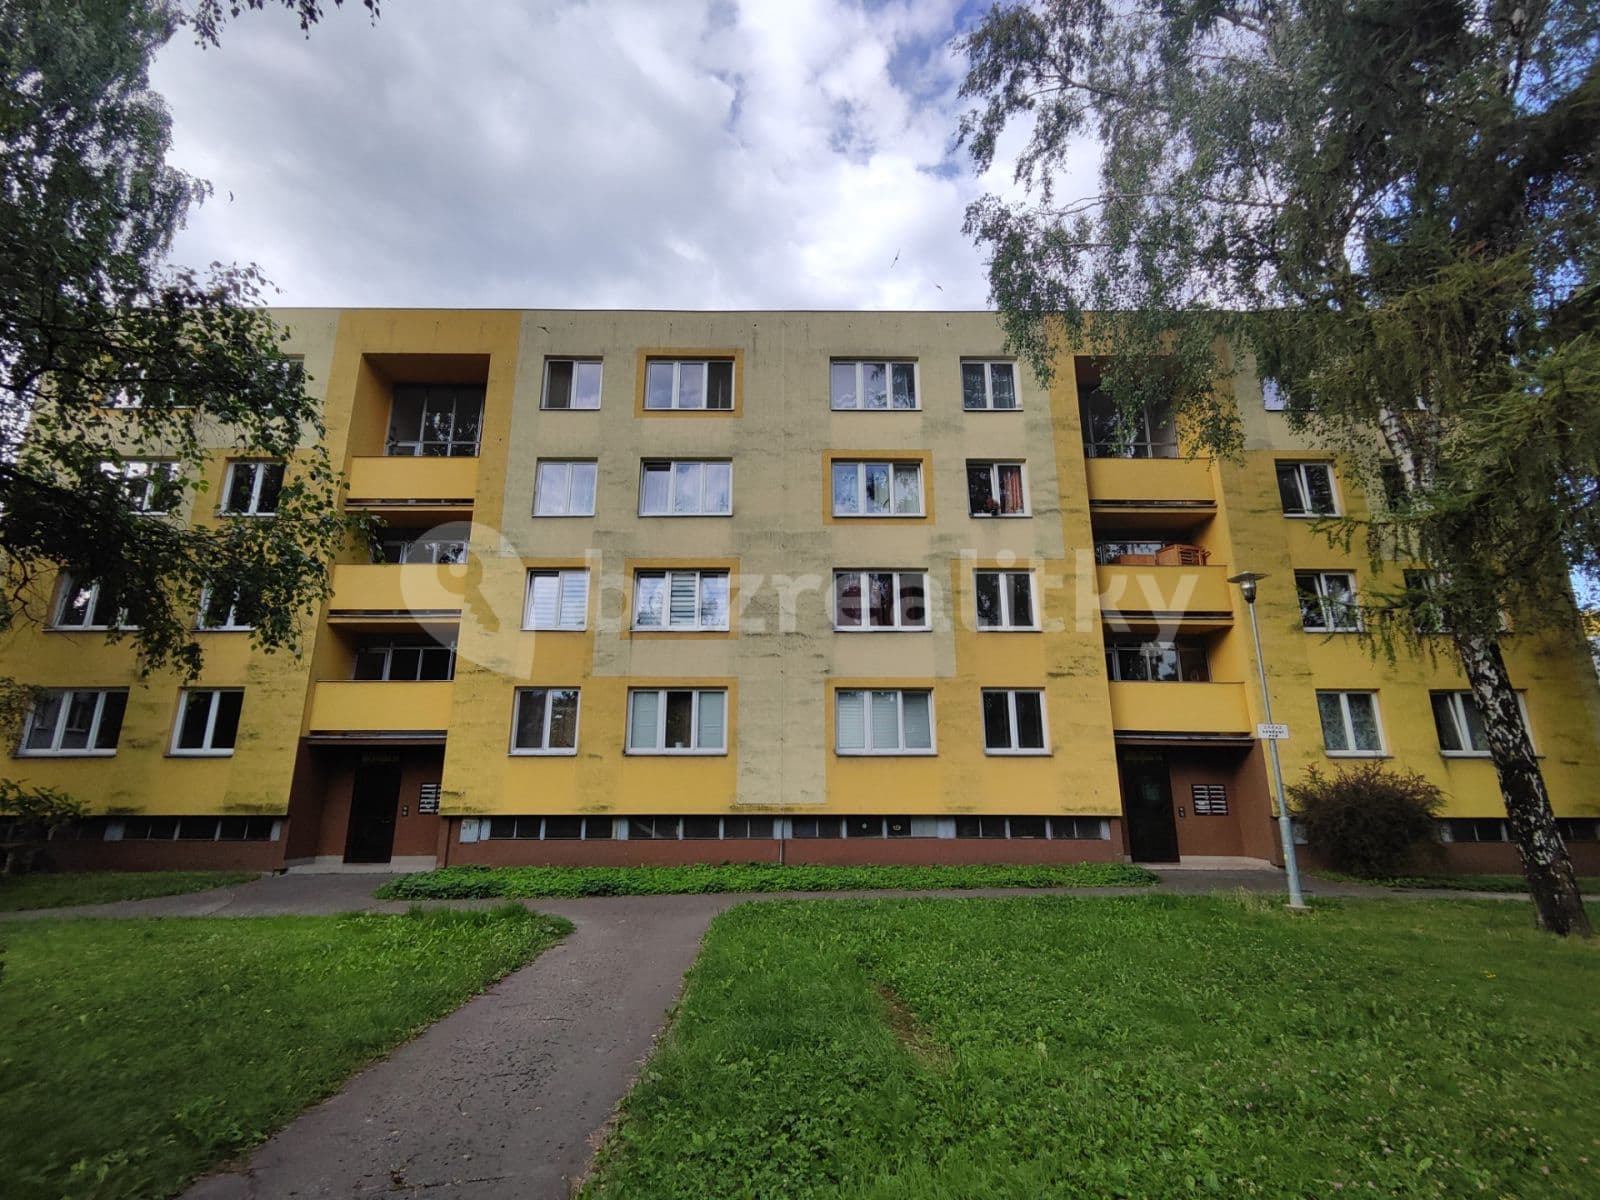 3 bedroom flat to rent, 83 m², Antala Staška, Frýdek-Místek, Moravskoslezský Region